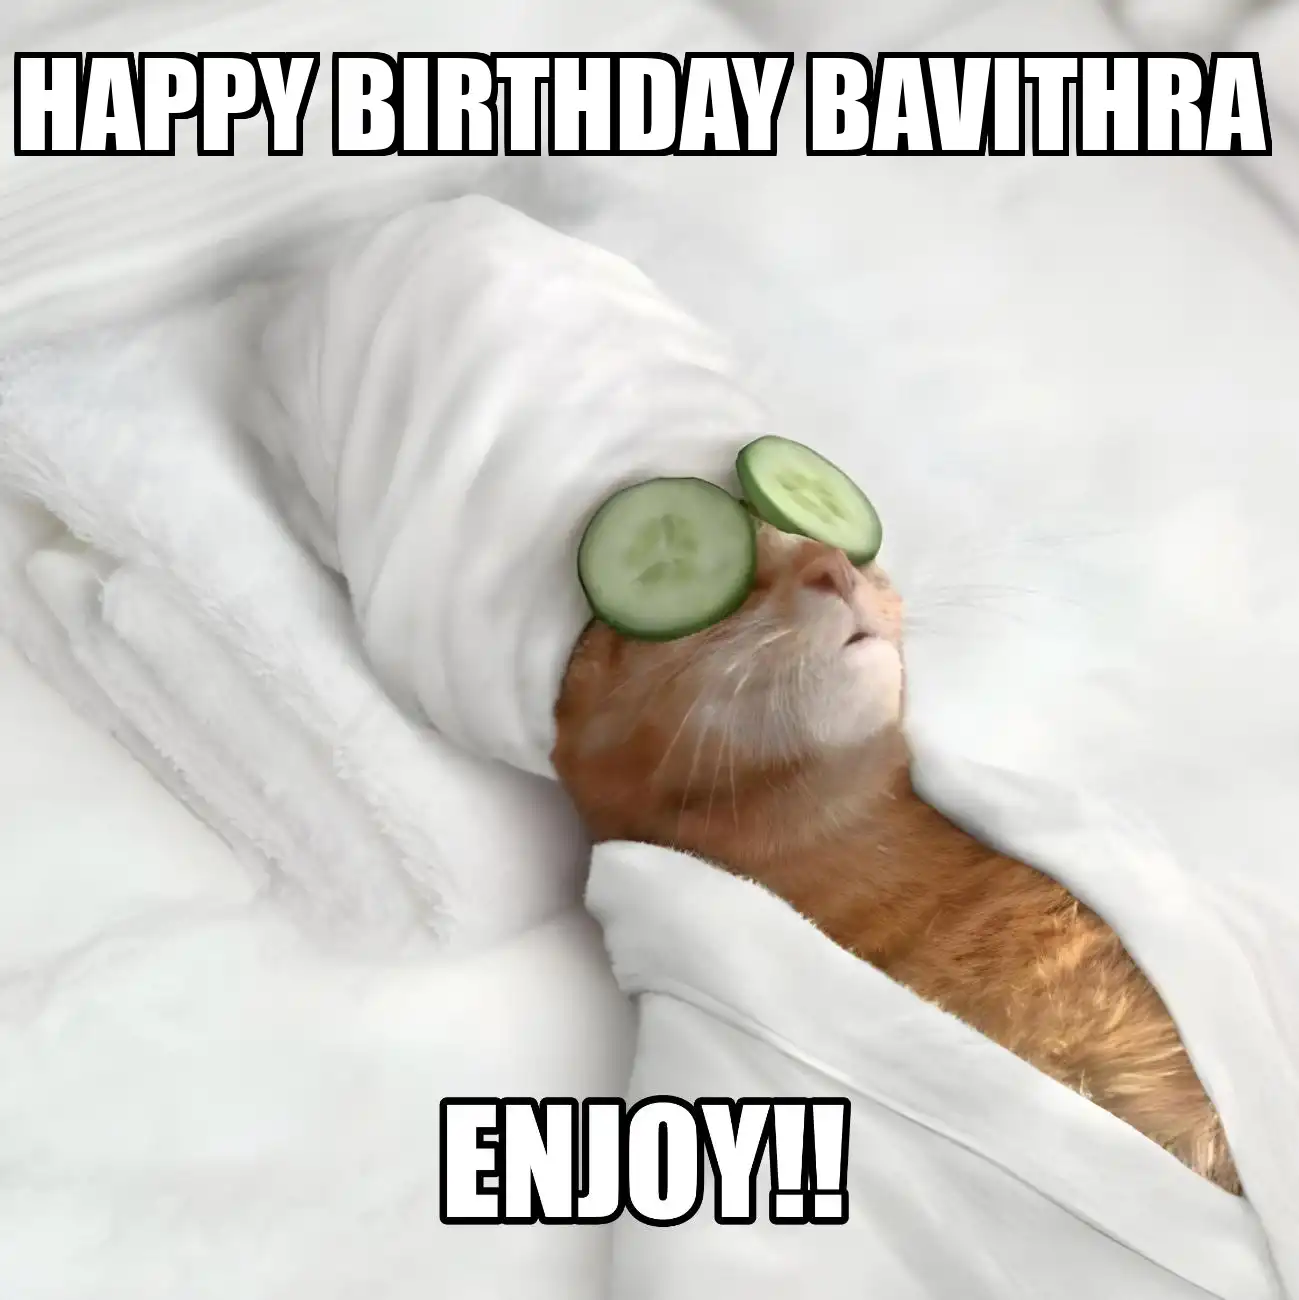 Happy Birthday Bavithra Enjoy Cat Meme